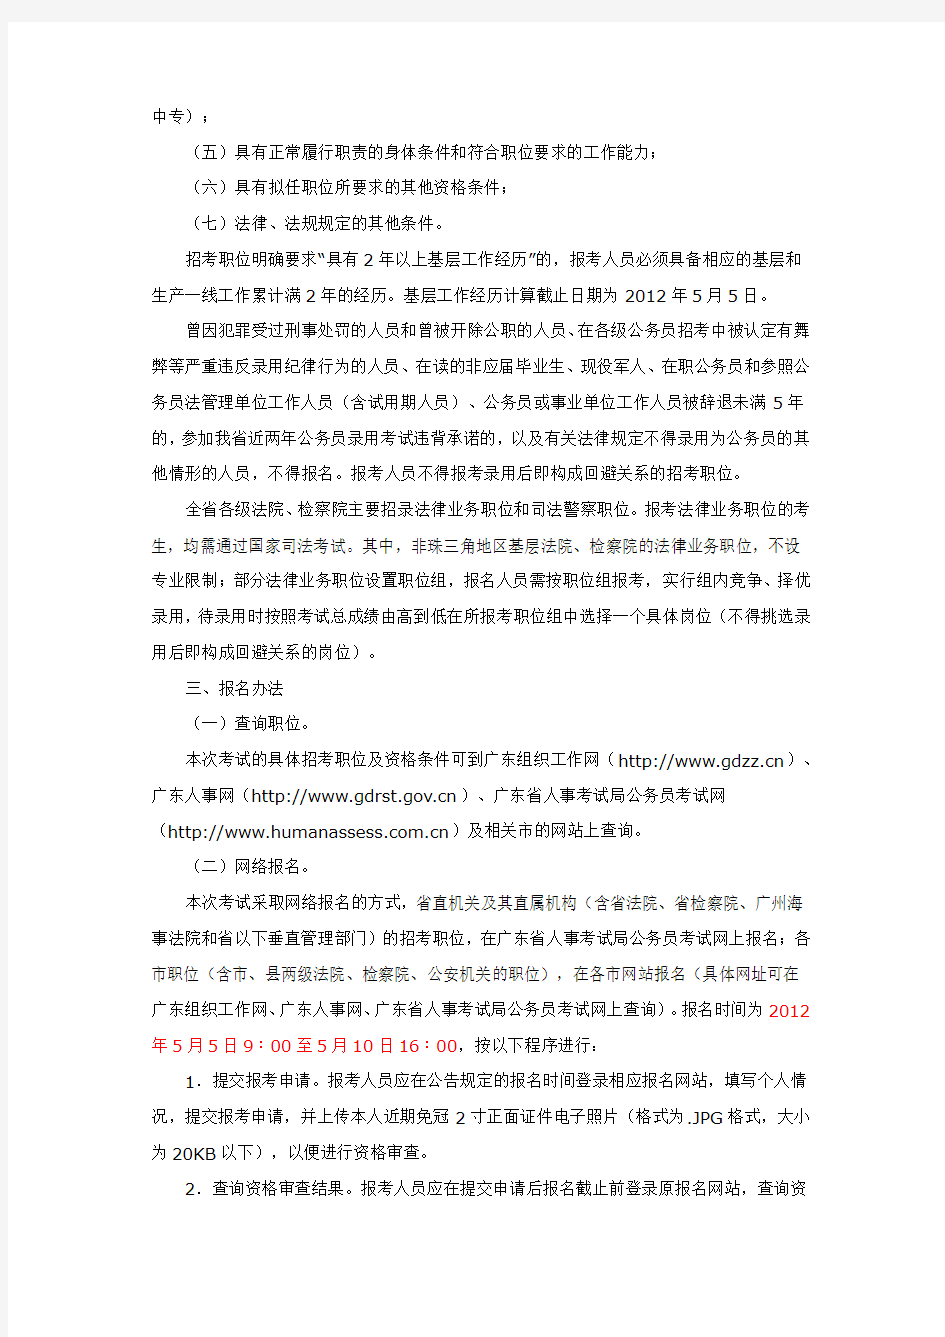 2012年广东省公务员考试公告